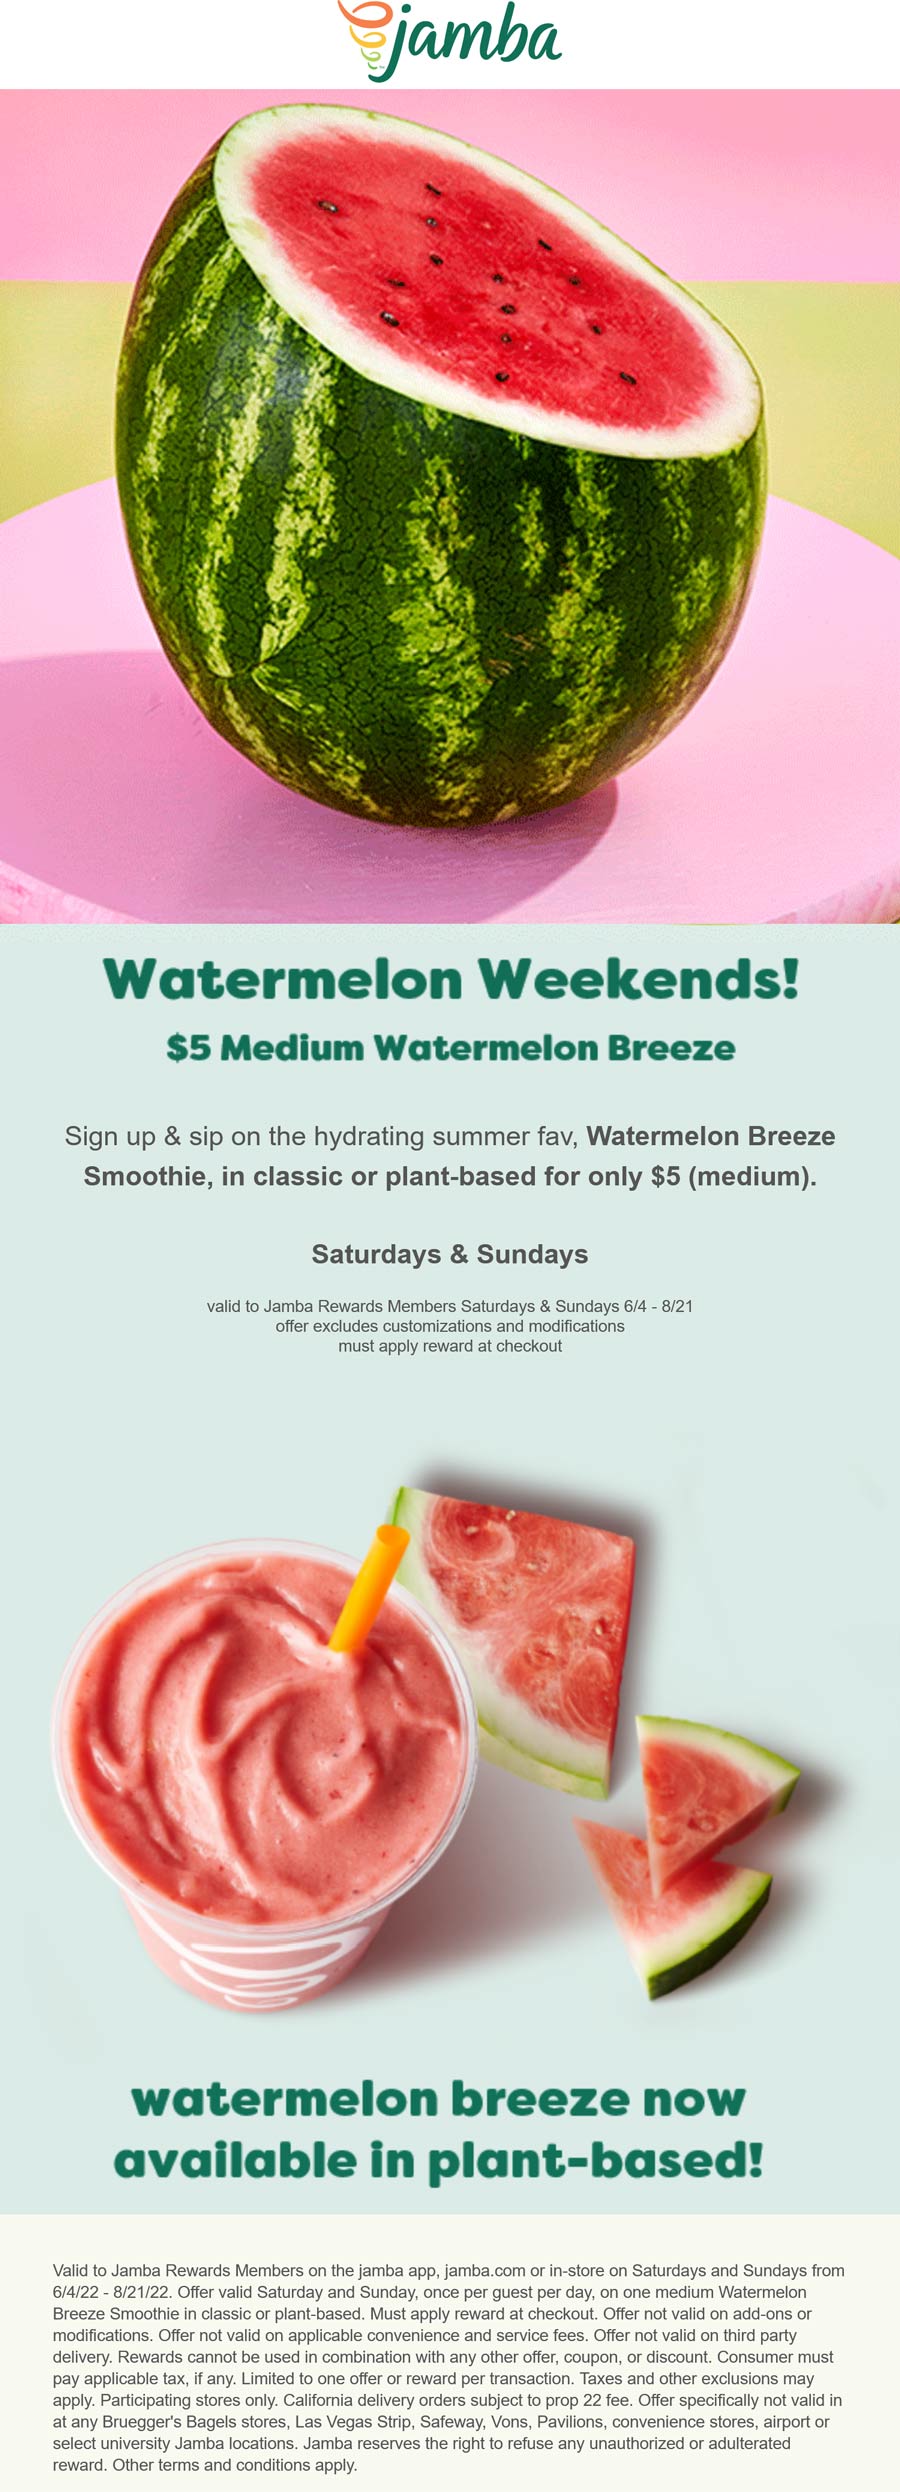 Jamba Juice restaurants Coupon  $5 watermelon breeze smoothie drink Sat & Sun via rewards at Jamba Juice #jambajuice 